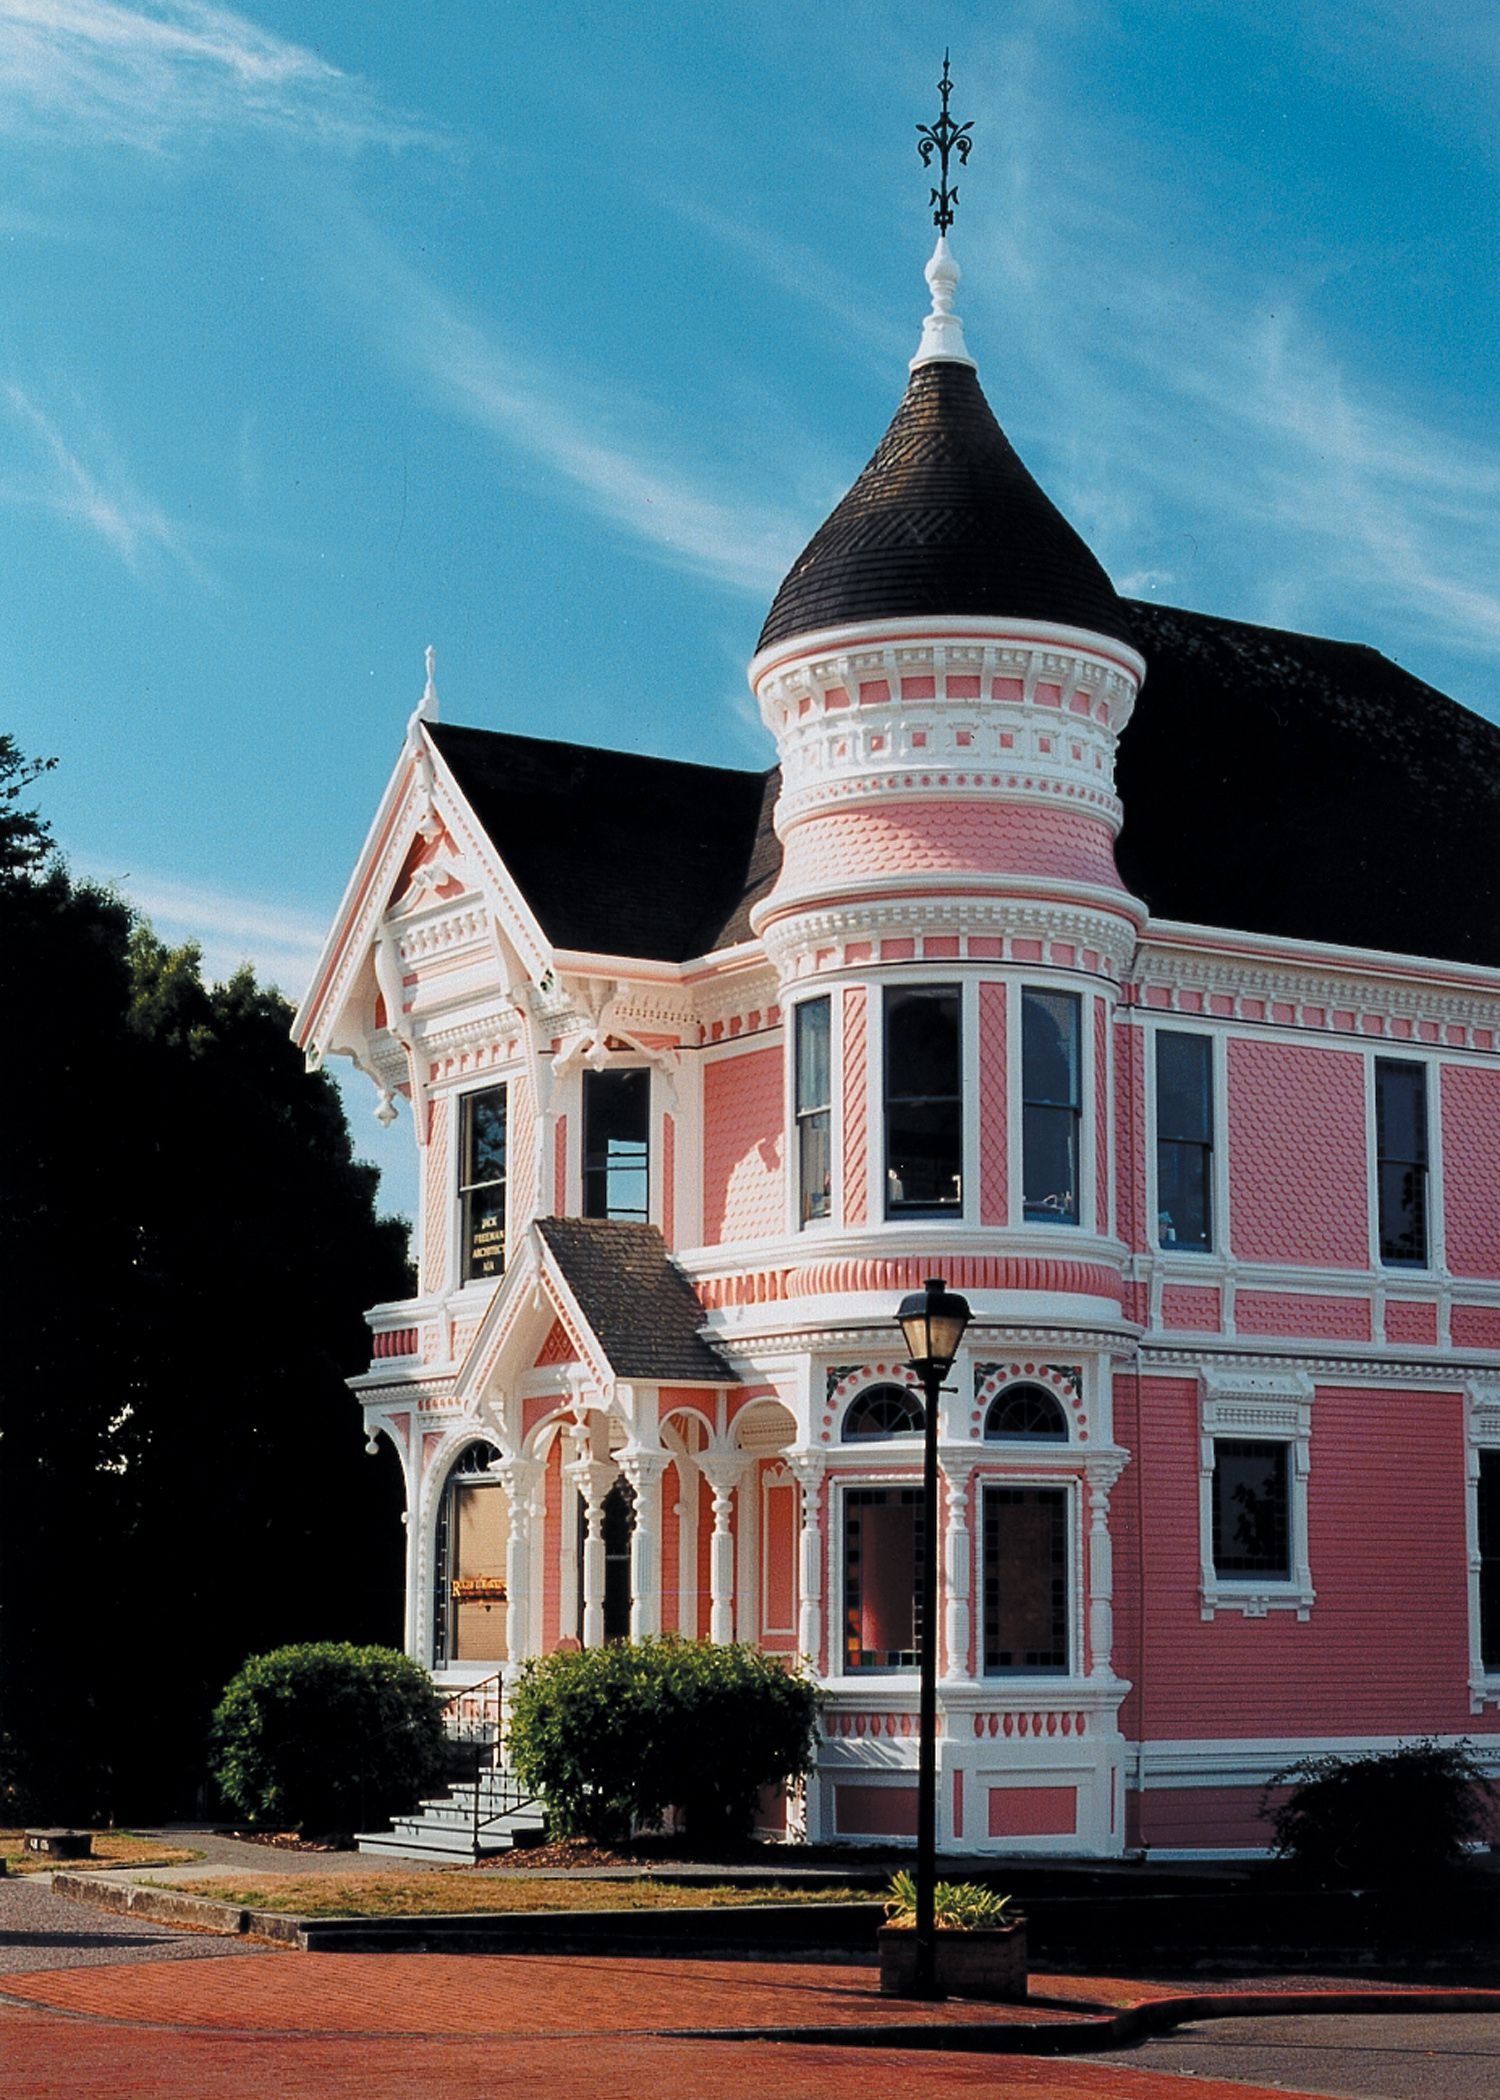 Фото розового дома. Викториан Пинк Хаус. Коттедж с башенкой в викторианском стиле. Розовый дом. Здания в стиле Барокко.